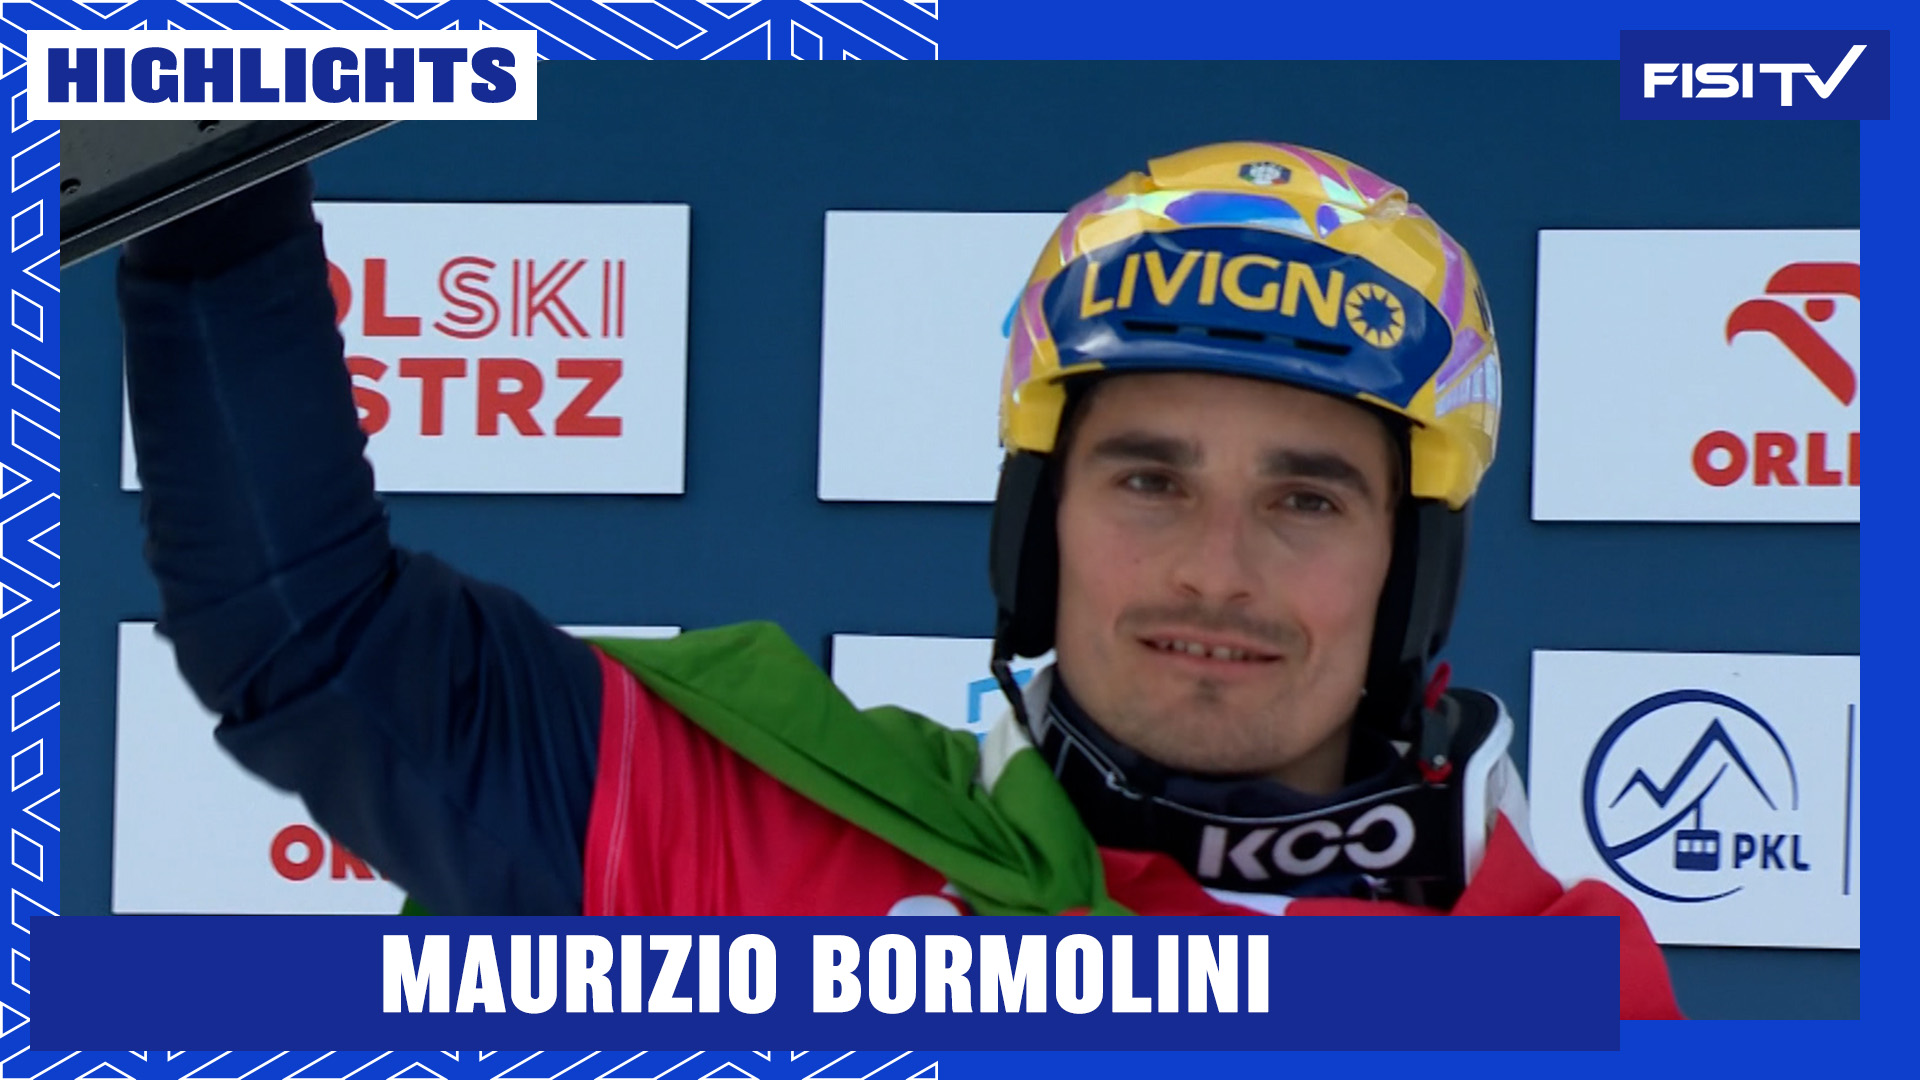 Maurizio Bormolini sfiora la vittoria nel PGS di Krynica | FISI TV